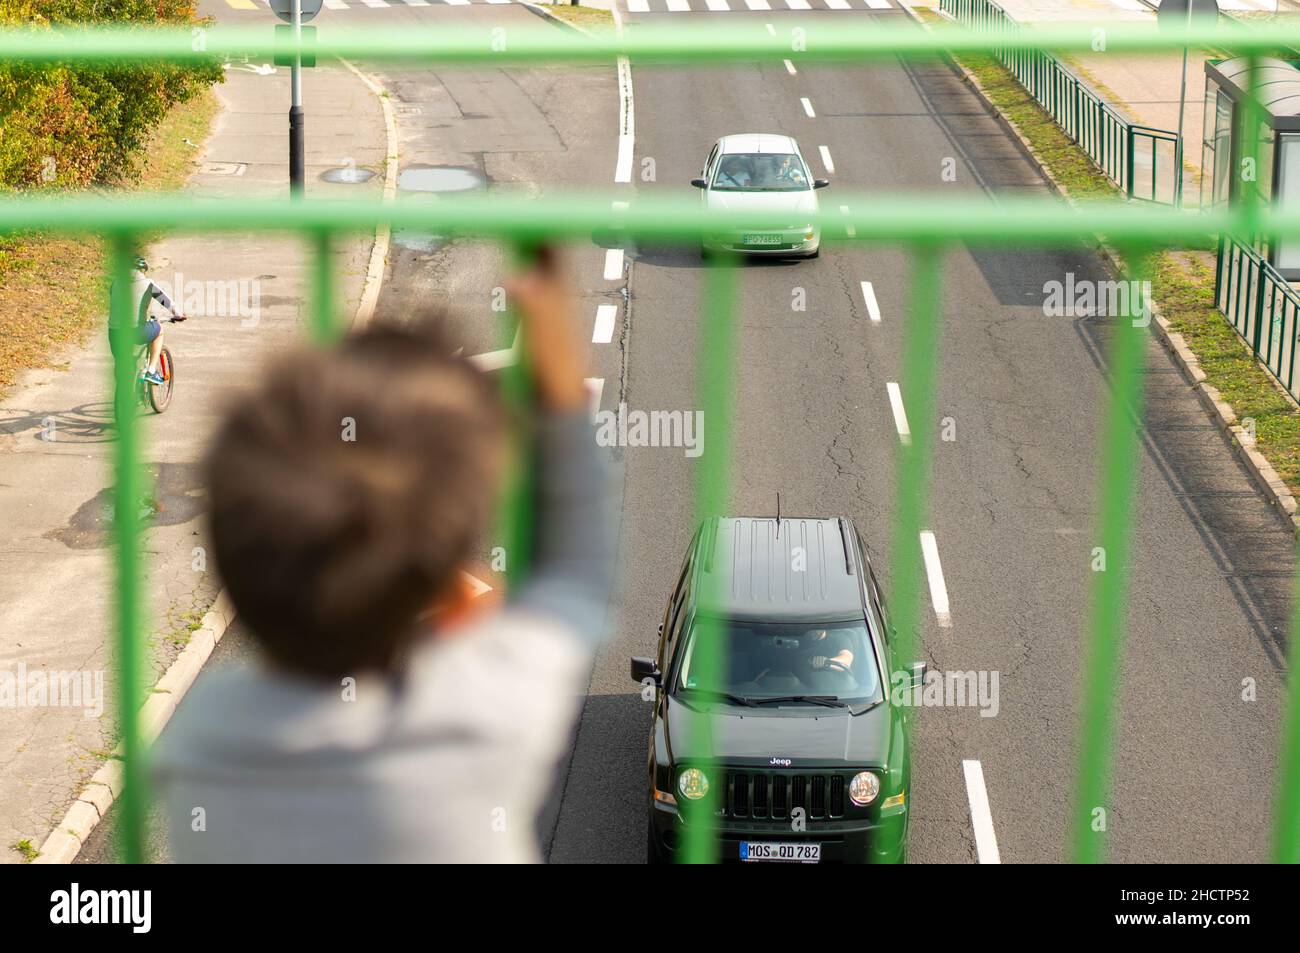 Un jeune garçon regarde les voitures sur une route depuis l'arrière d'une barrière Banque D'Images